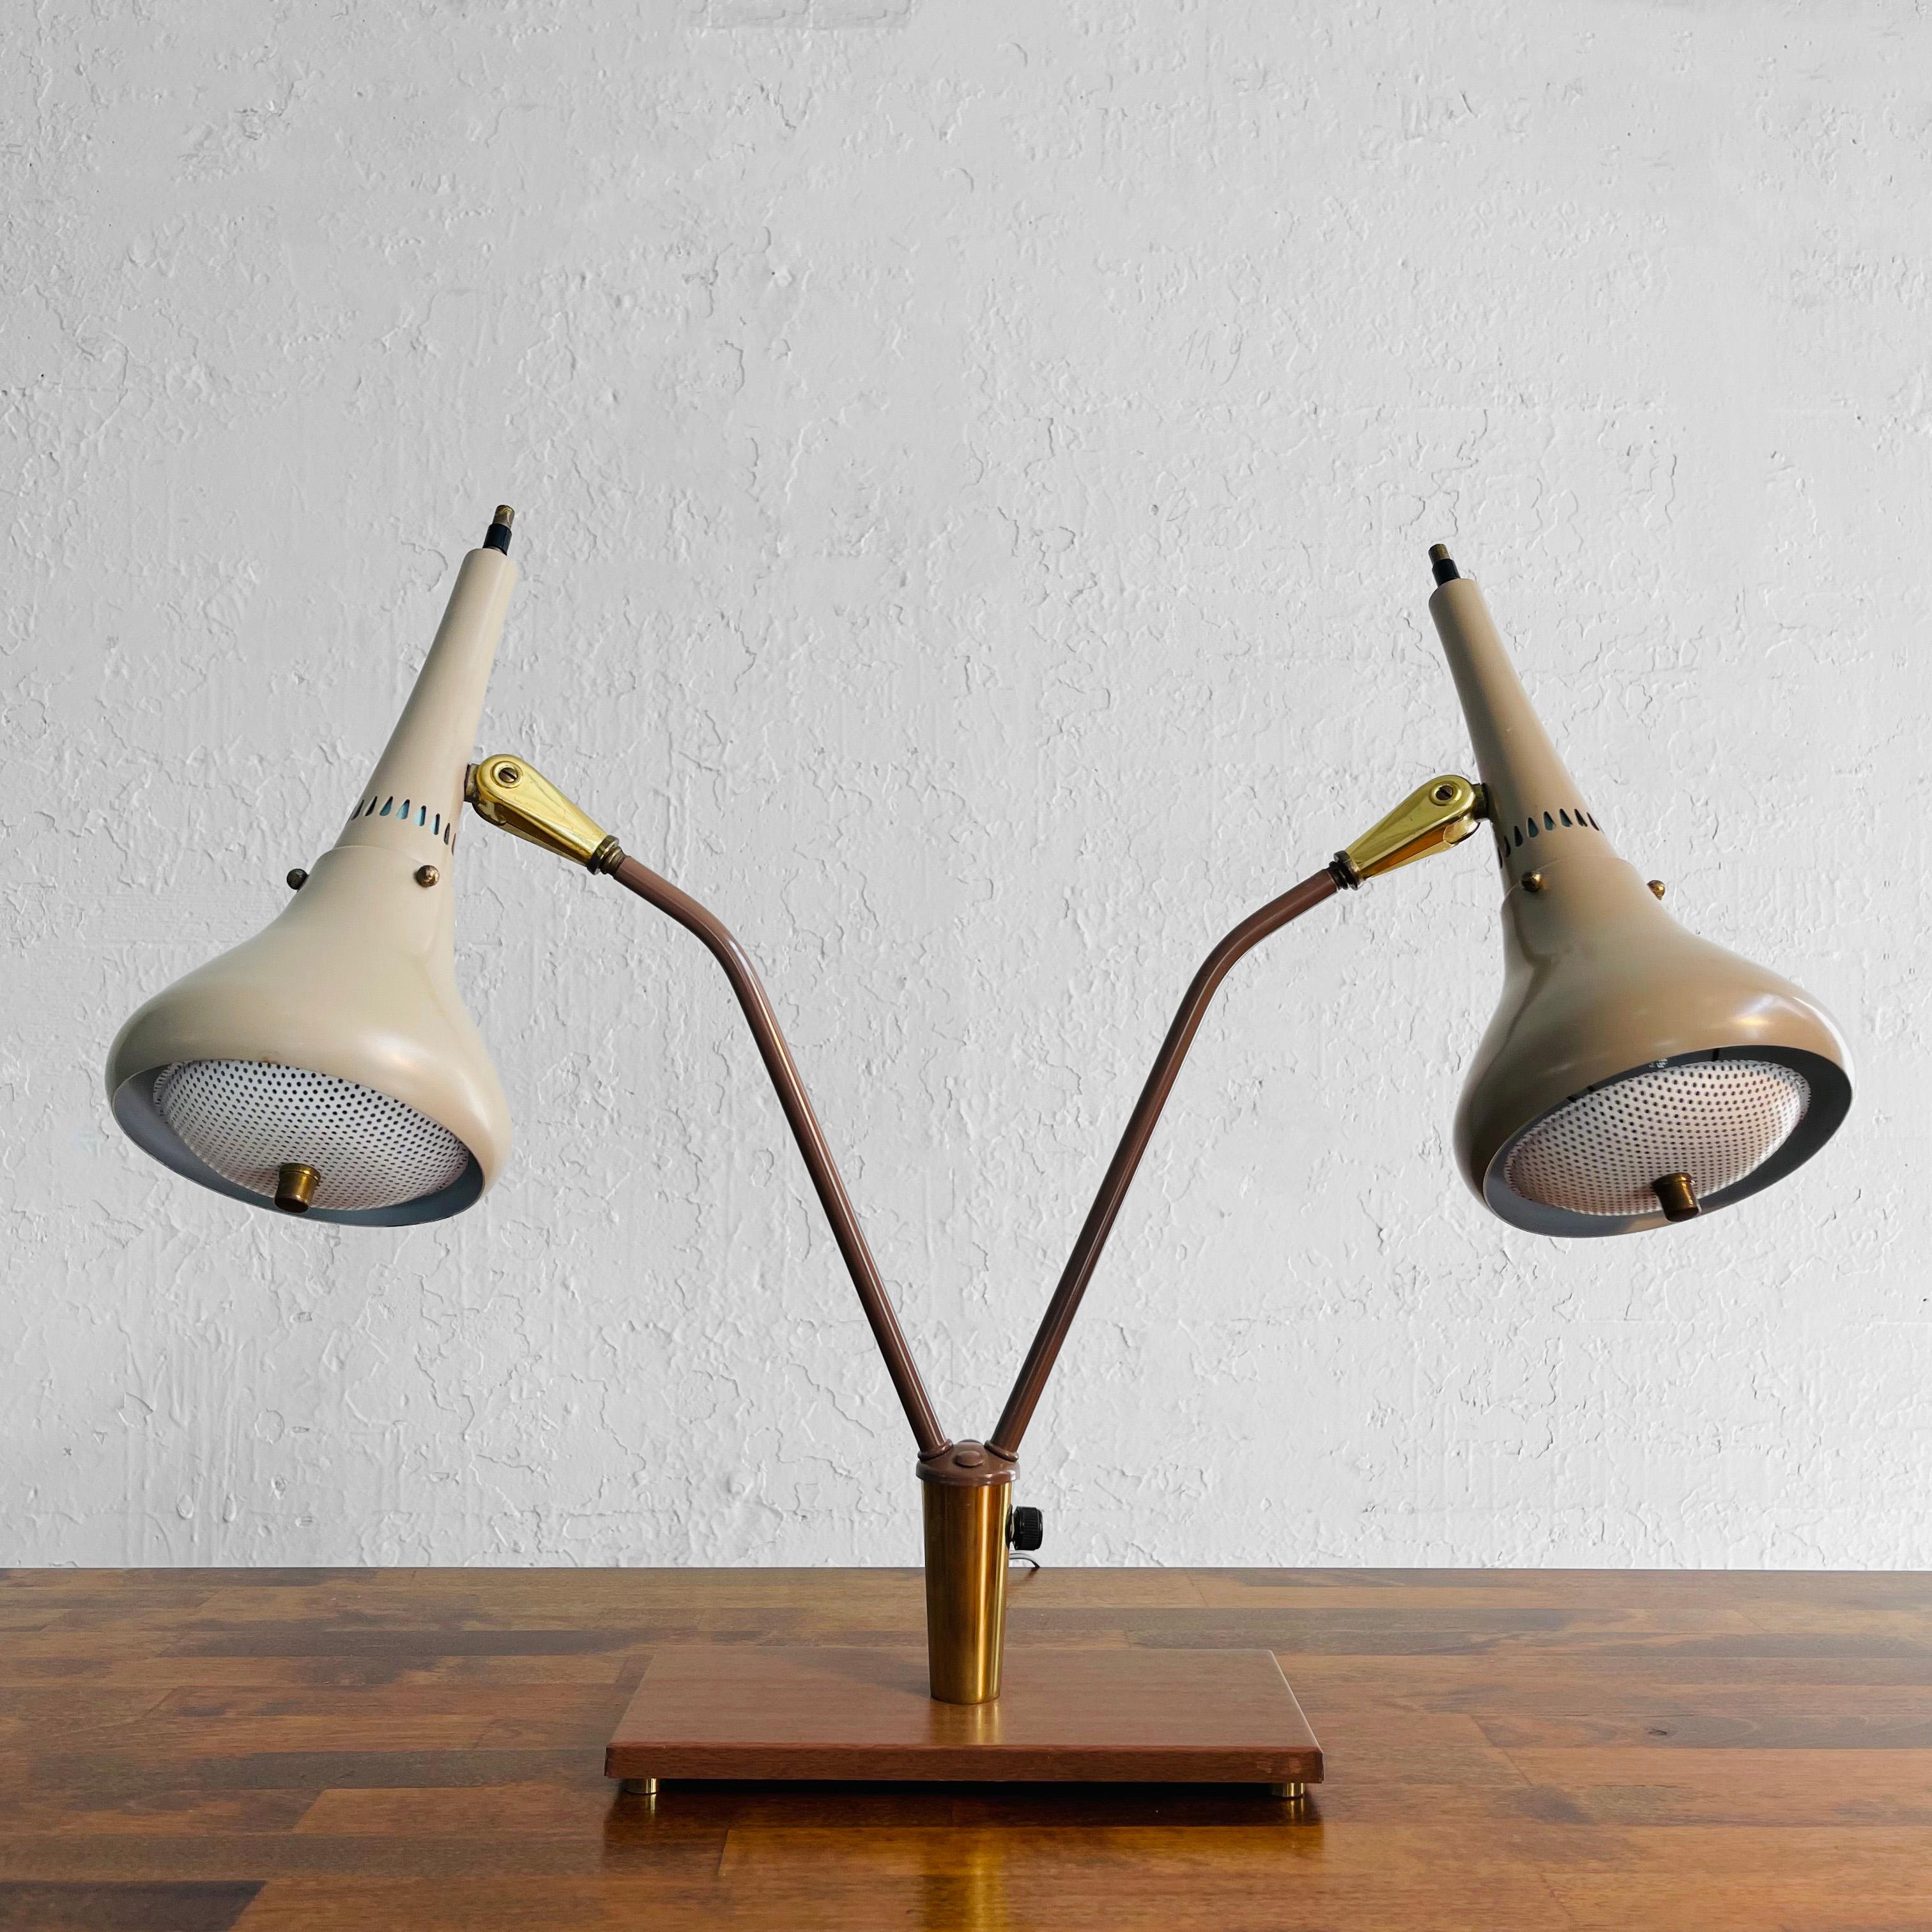 Lampe de bureau classique, moderne du milieu du siècle, à deux têtes, créée par Gerald Thurston pour Lightolier, avec des abat-jour en métal peint, des diffuseurs perforés et des accents en laiton sur une base en métal imitation bois. Les lampes